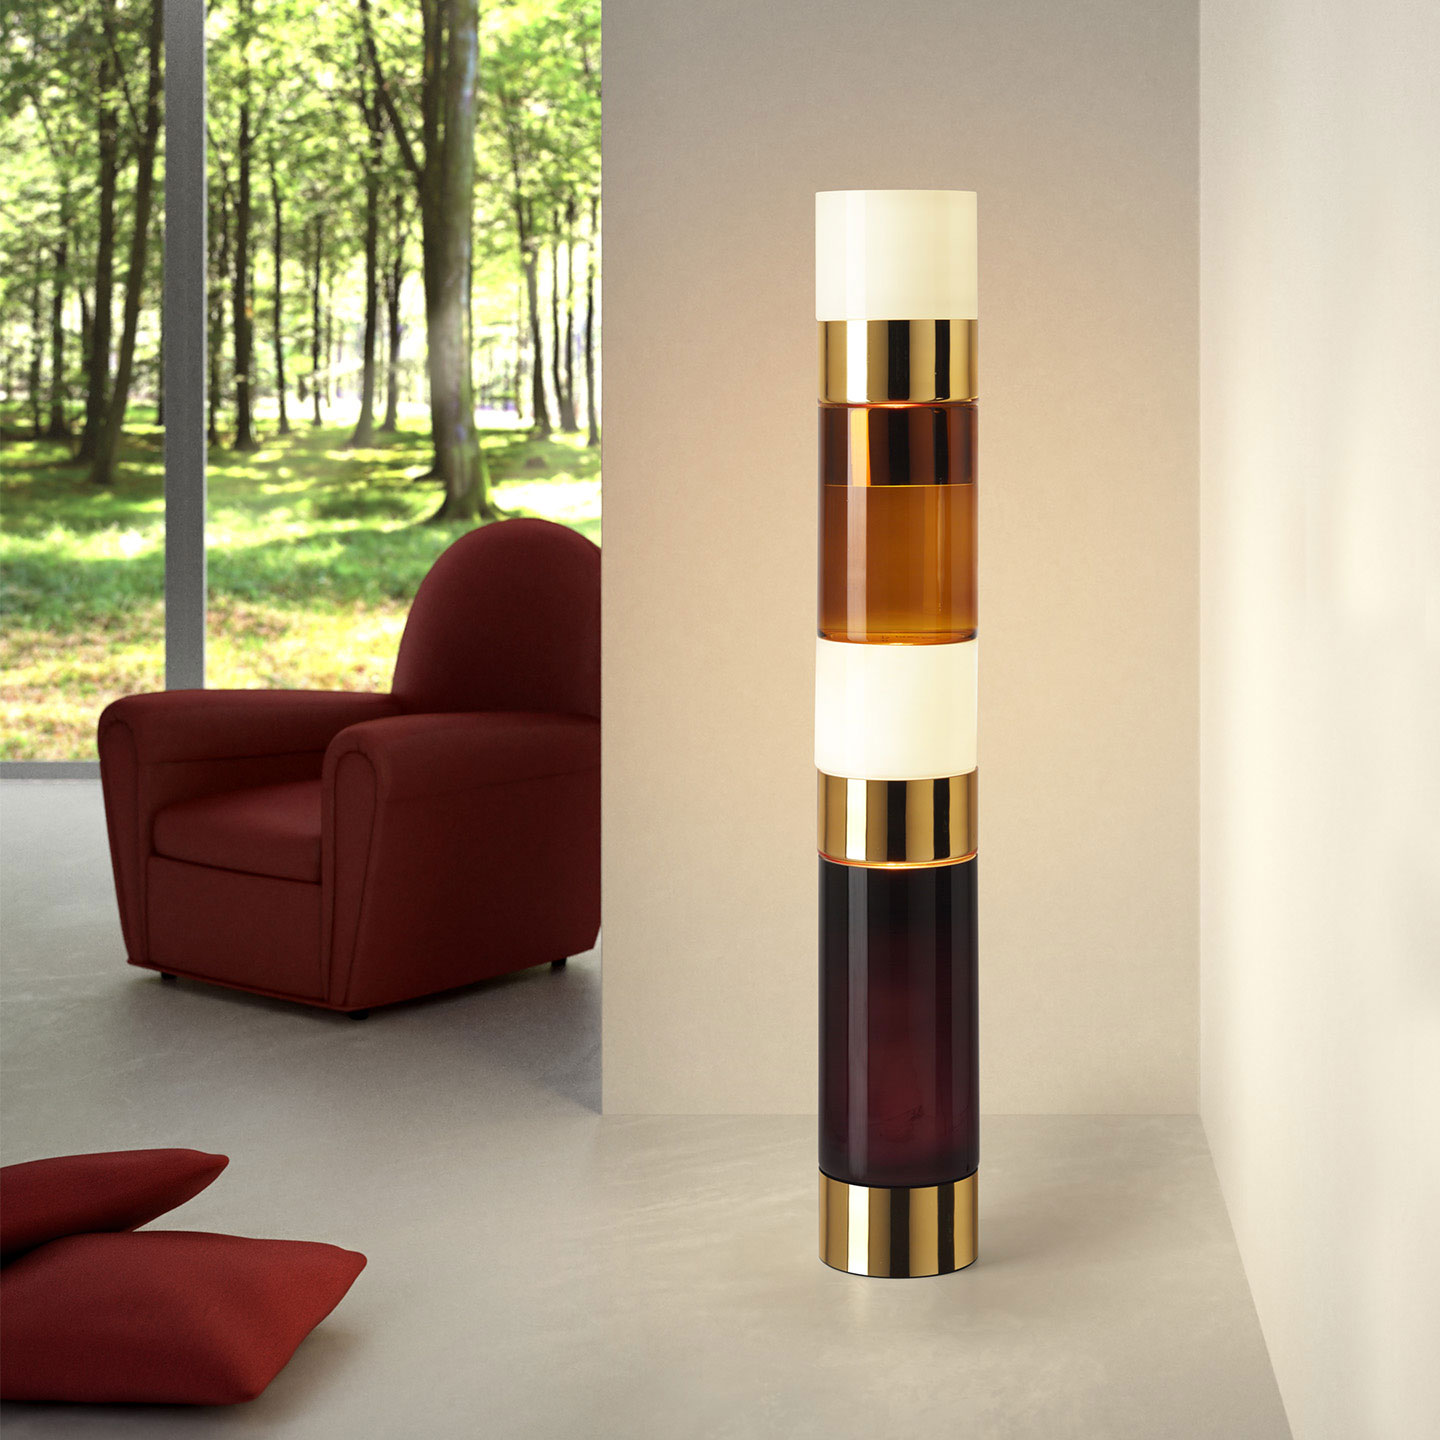 Réveillez votre intérieur avec un lampadaire en verre ultra tendance! Découvrez notre collection de lampadaires design. Achetez nos lampadaires d'intérieur.